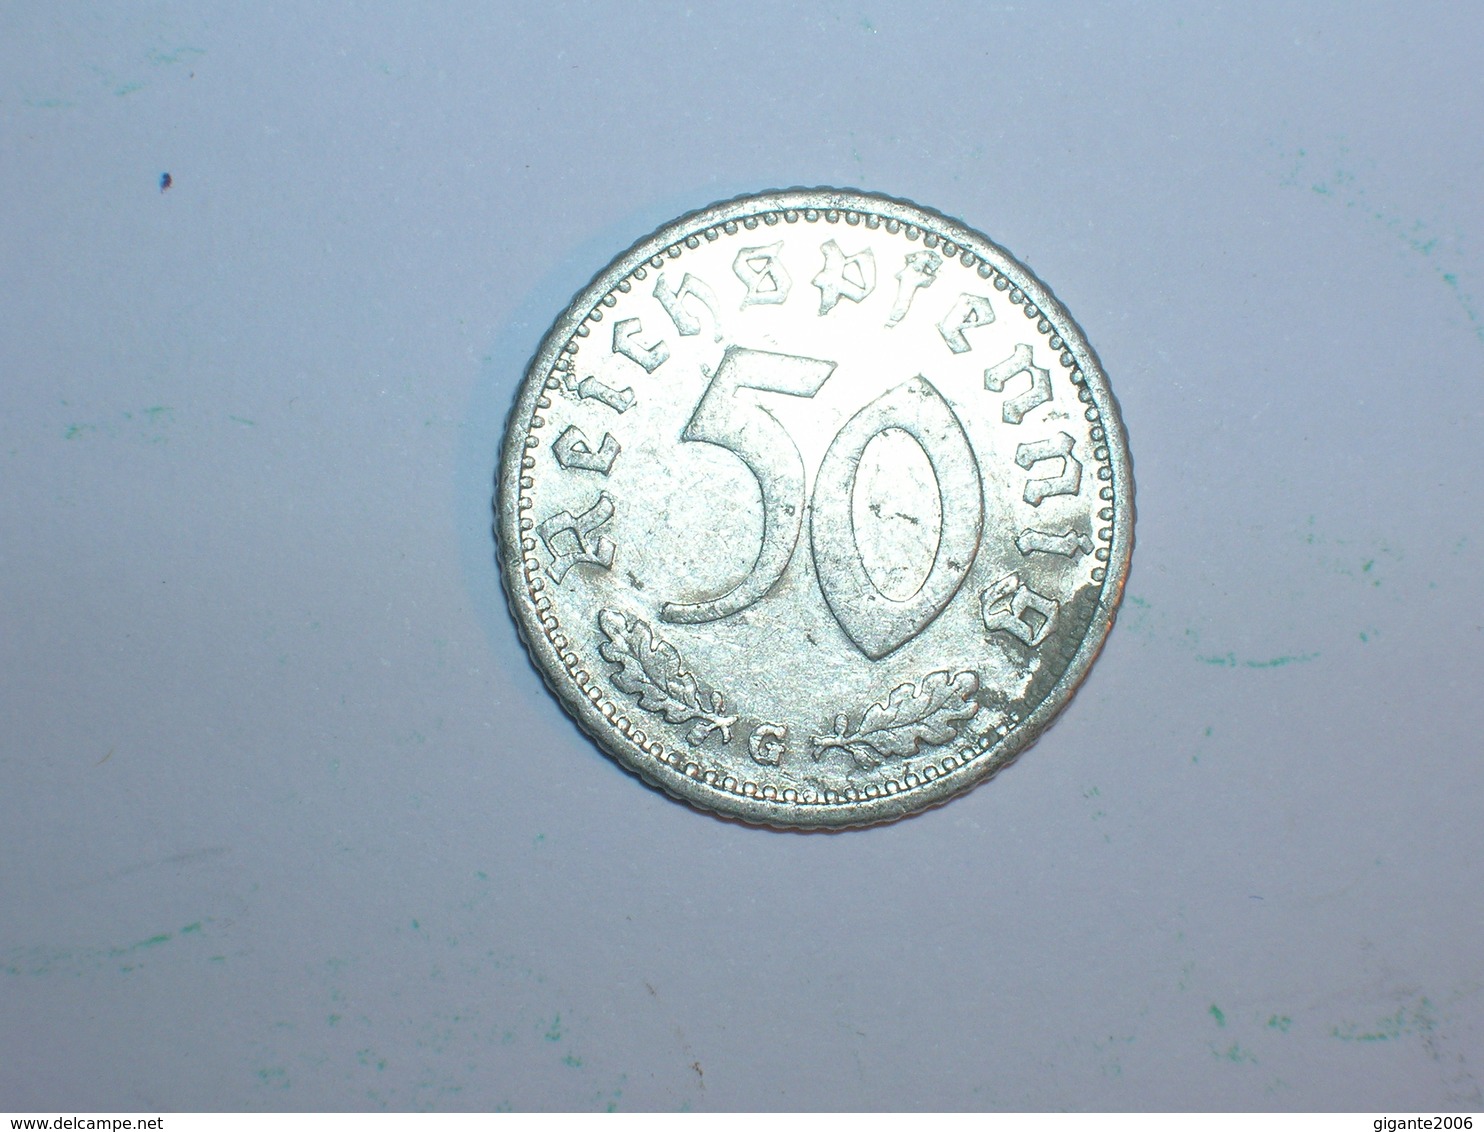 ALEMANIA 50 PFENNIG 1935 G (1220) - 50 Reichspfennig